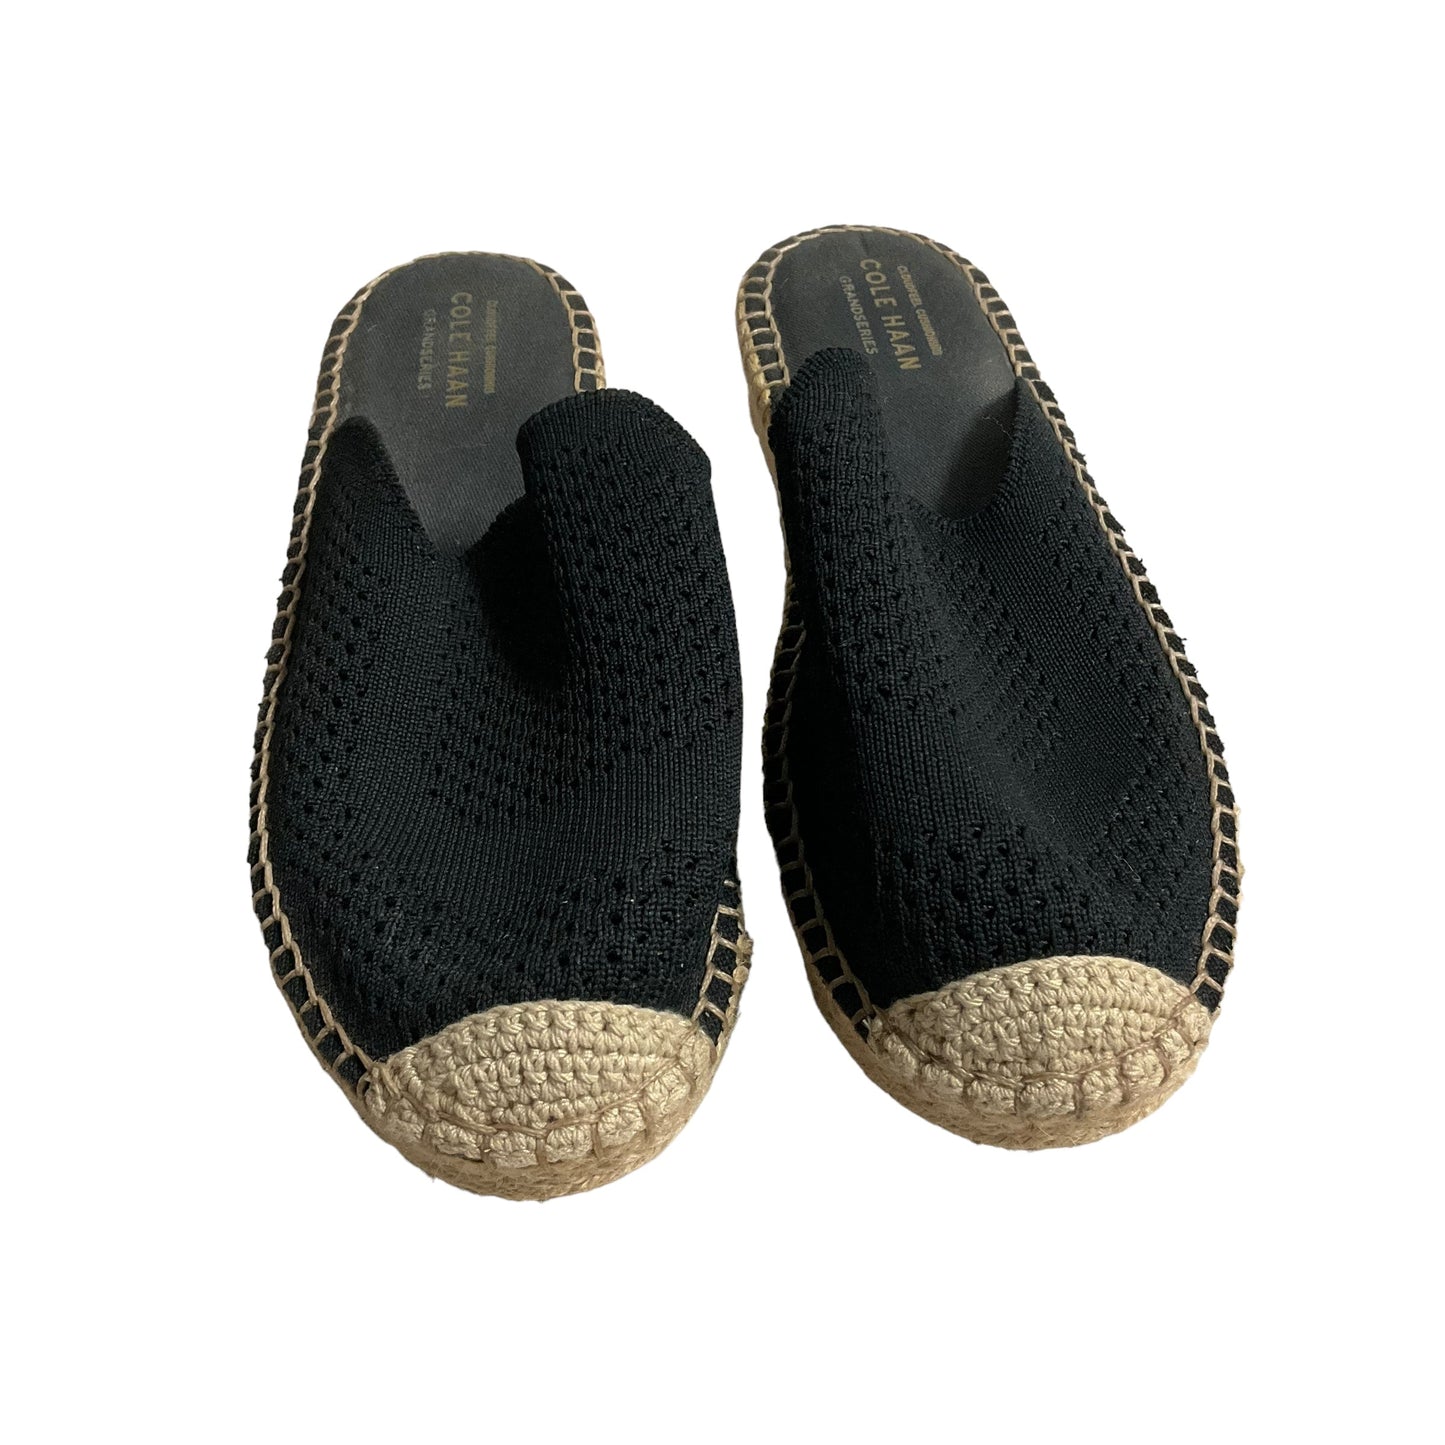 Black Sandals Flats Cole-haan, Size 7